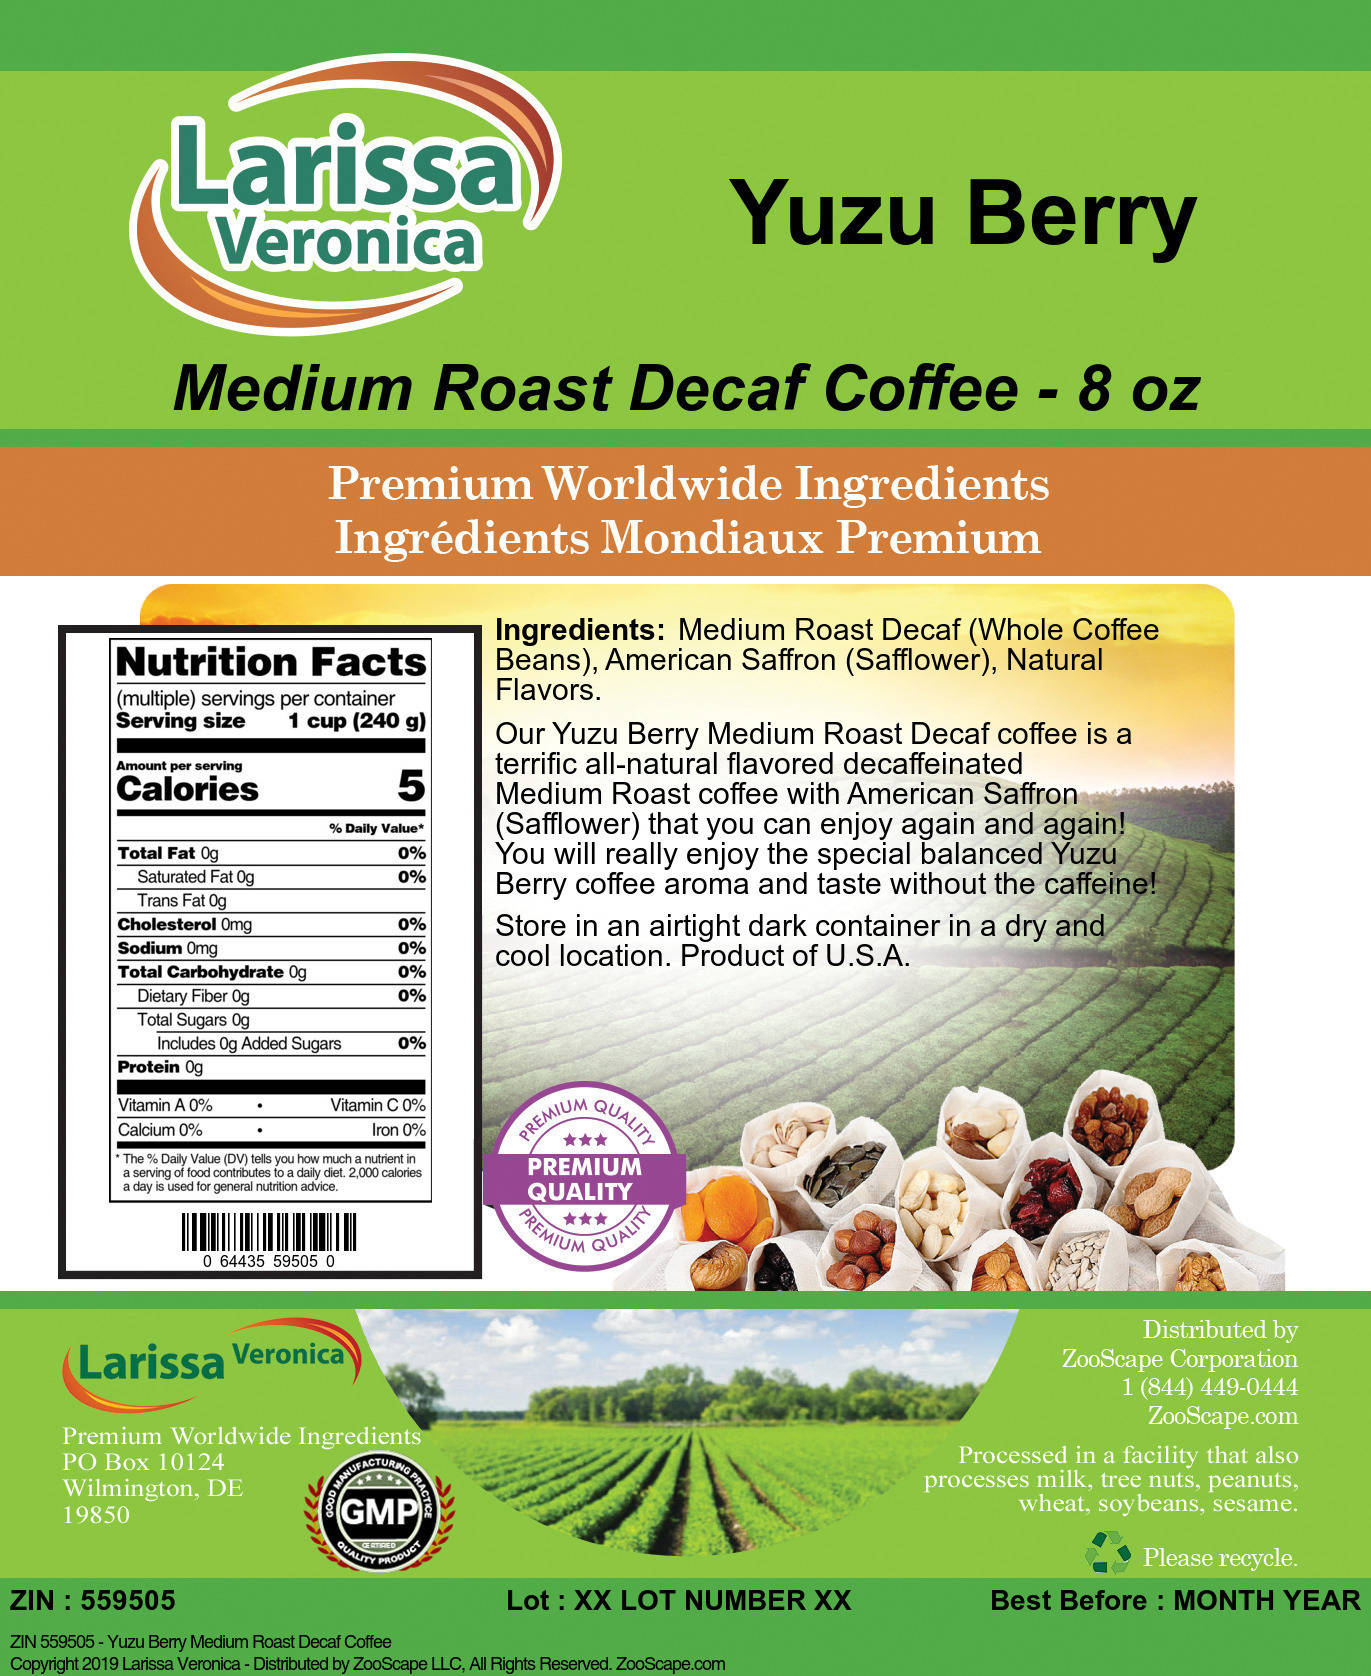 Yuzu Berry Medium Roast Decaf Coffee - Label